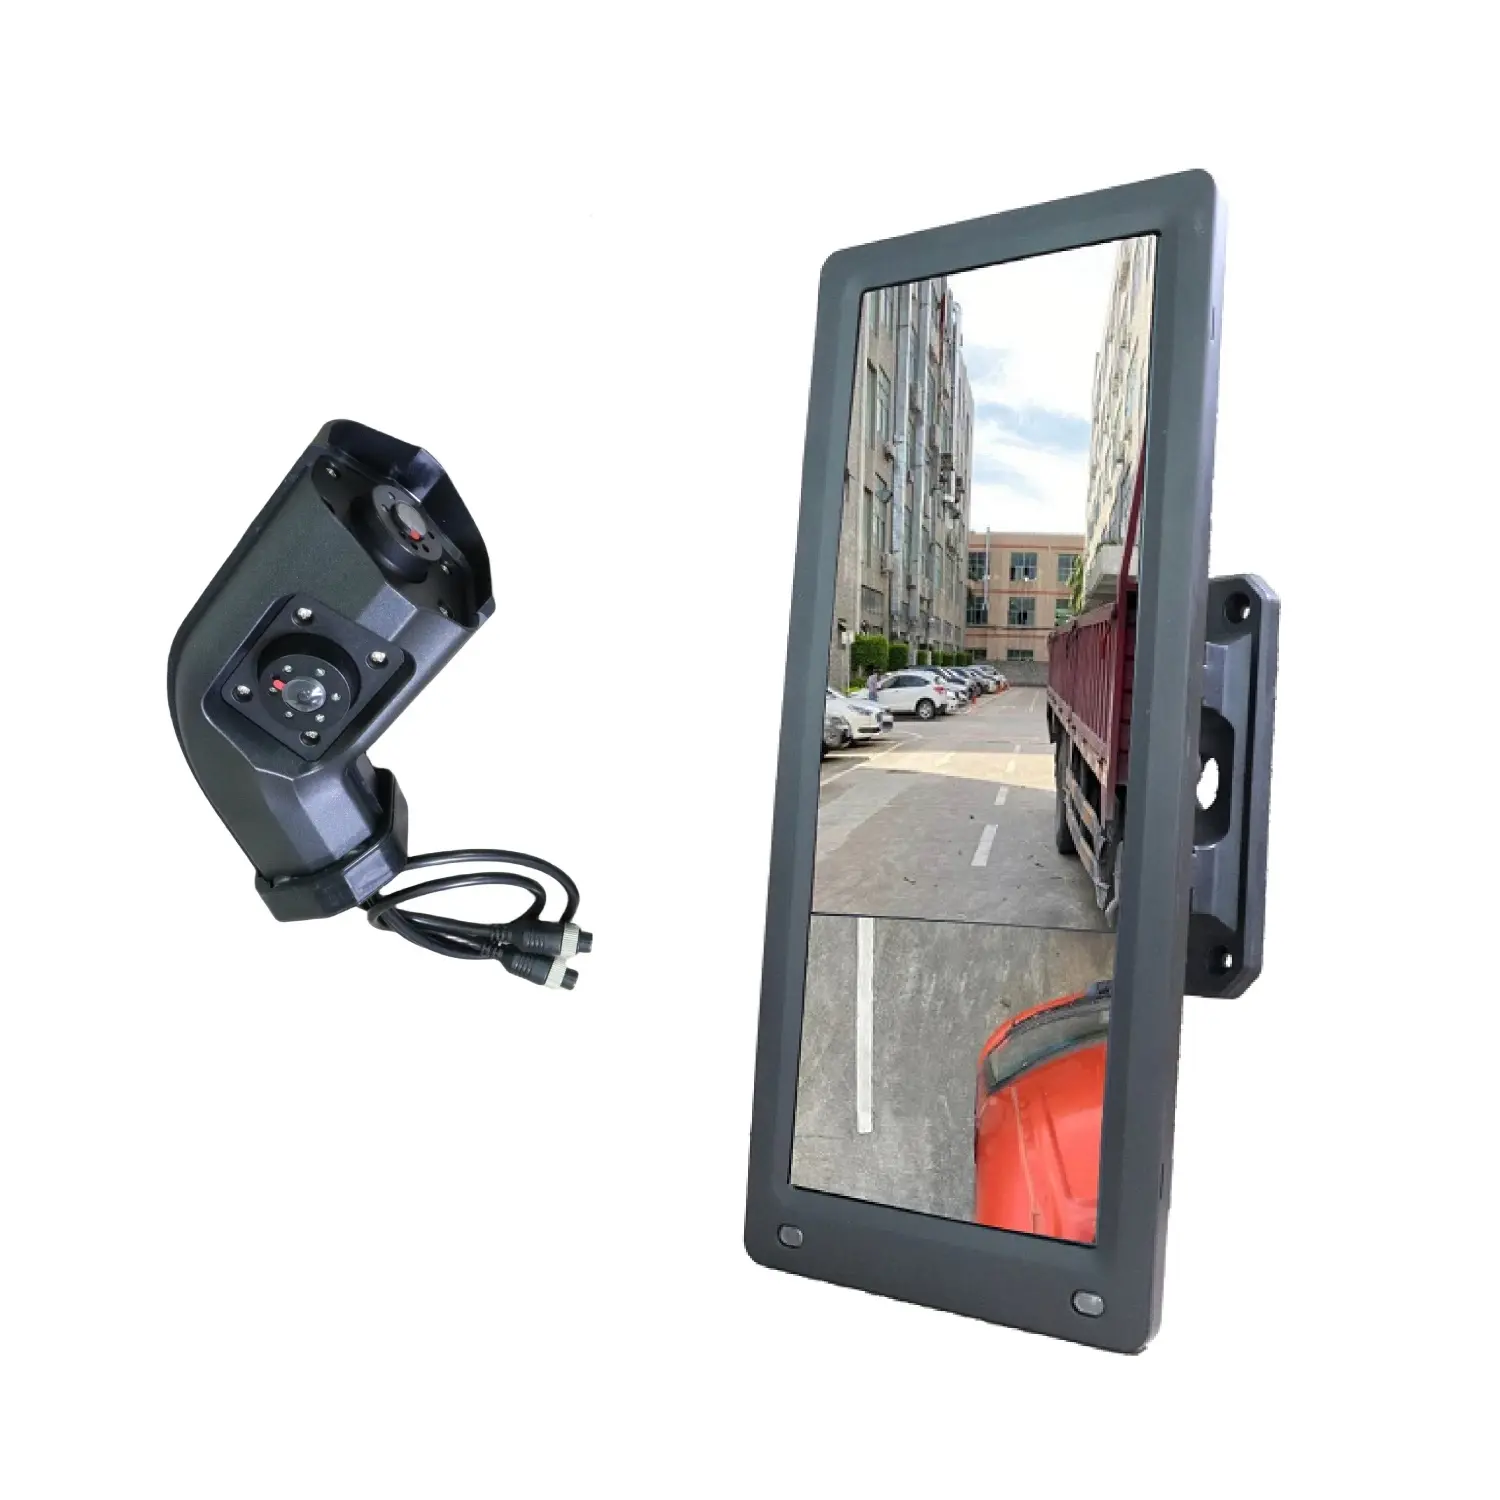 Hoke vision 12,3 Zoll HD elektronischer LKW-Spiegel hinten 720p Seiten ansicht Rückspiegel-Display-Monitor mit Dual-Len-Kamera für Bus